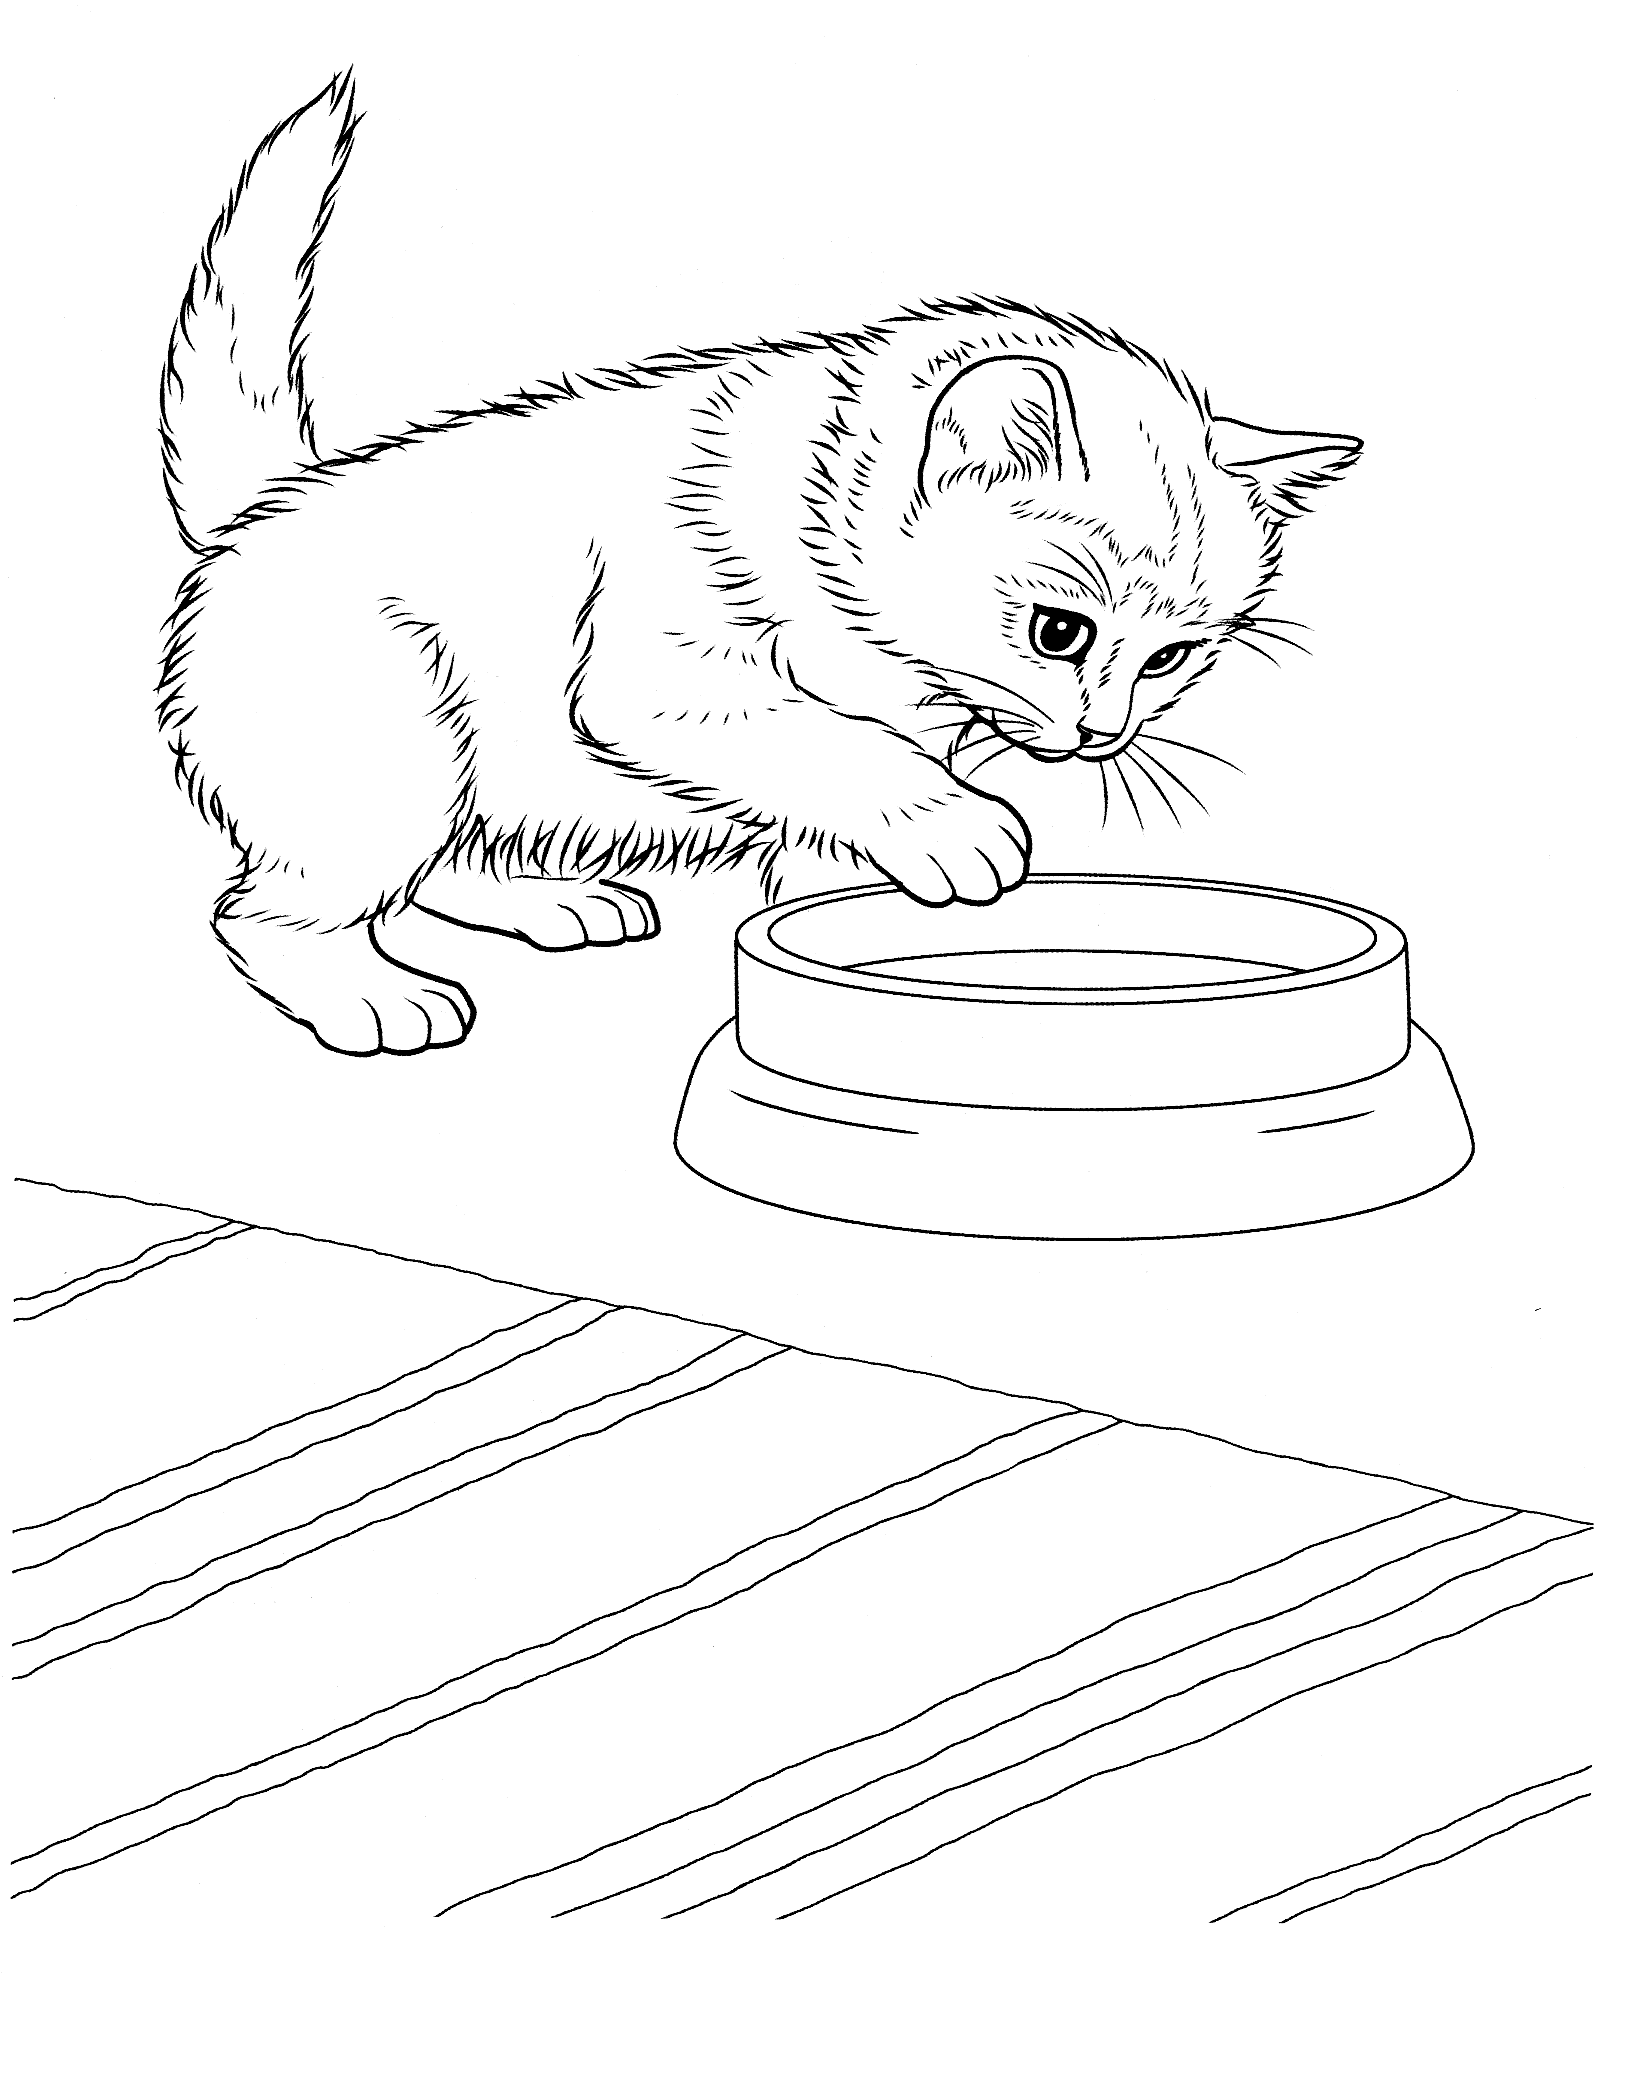 planse desene de colorat pisica